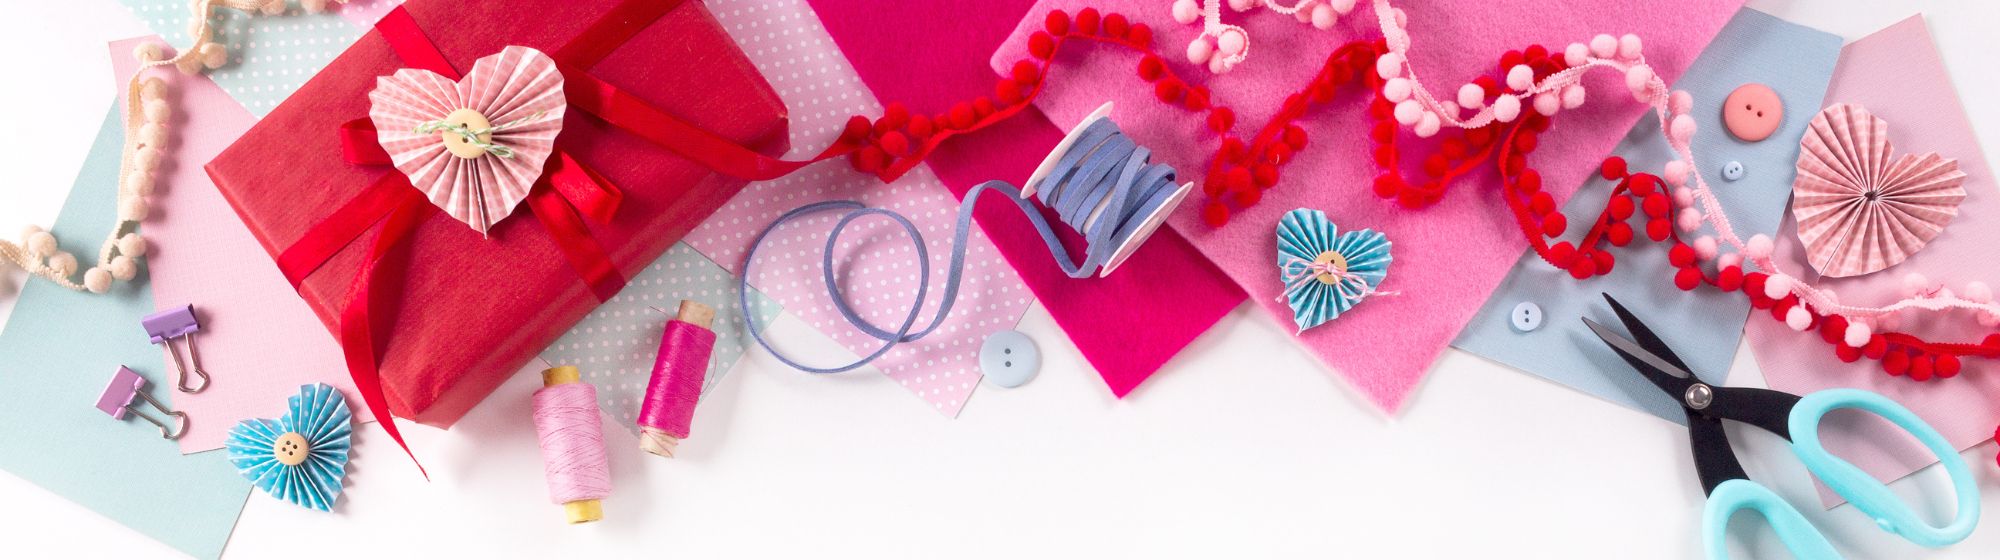 Loisirs créatifs rose et rouge pour la Saint Valentin : papier, ciseaux, rubans, fils de couture,...